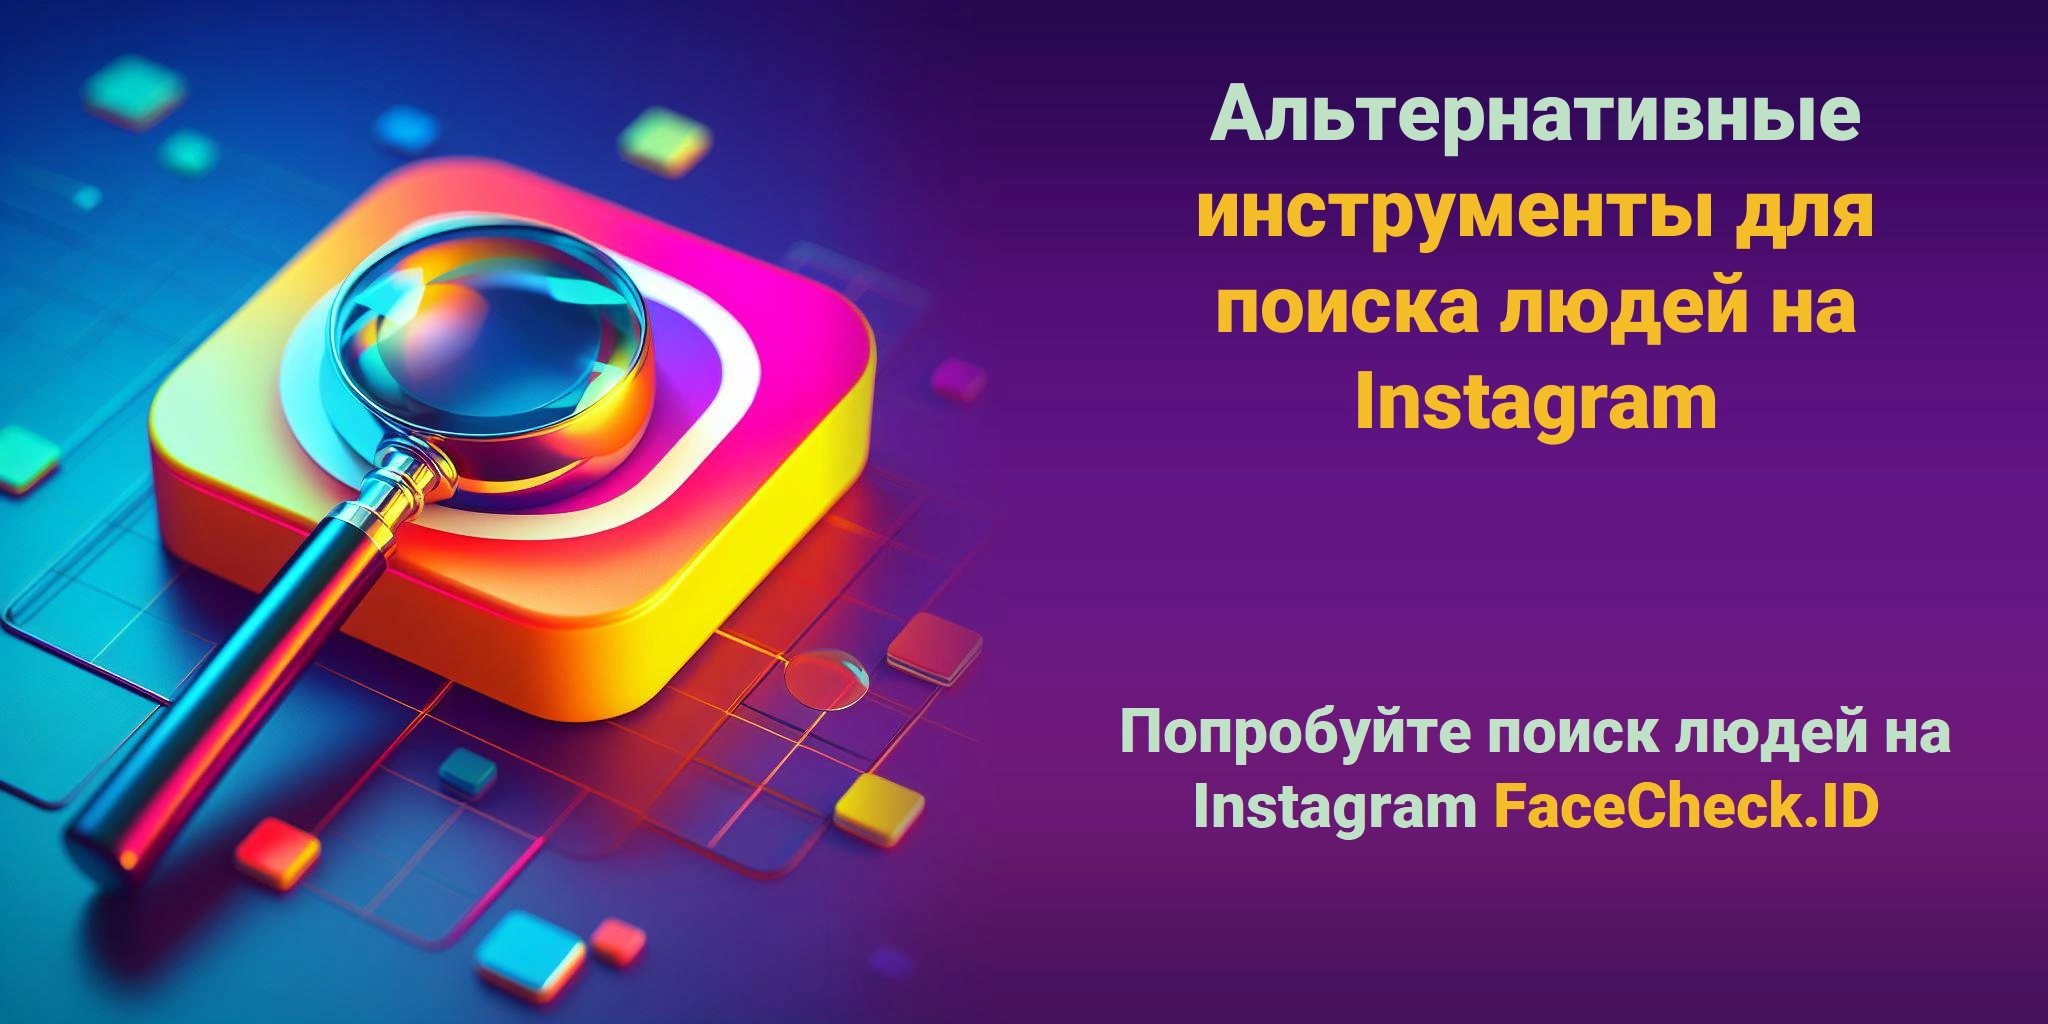 Альтернативные инструменты для поиска людей на Instagram Попробуйте поиск людей на Instagram FaceCheck.ID